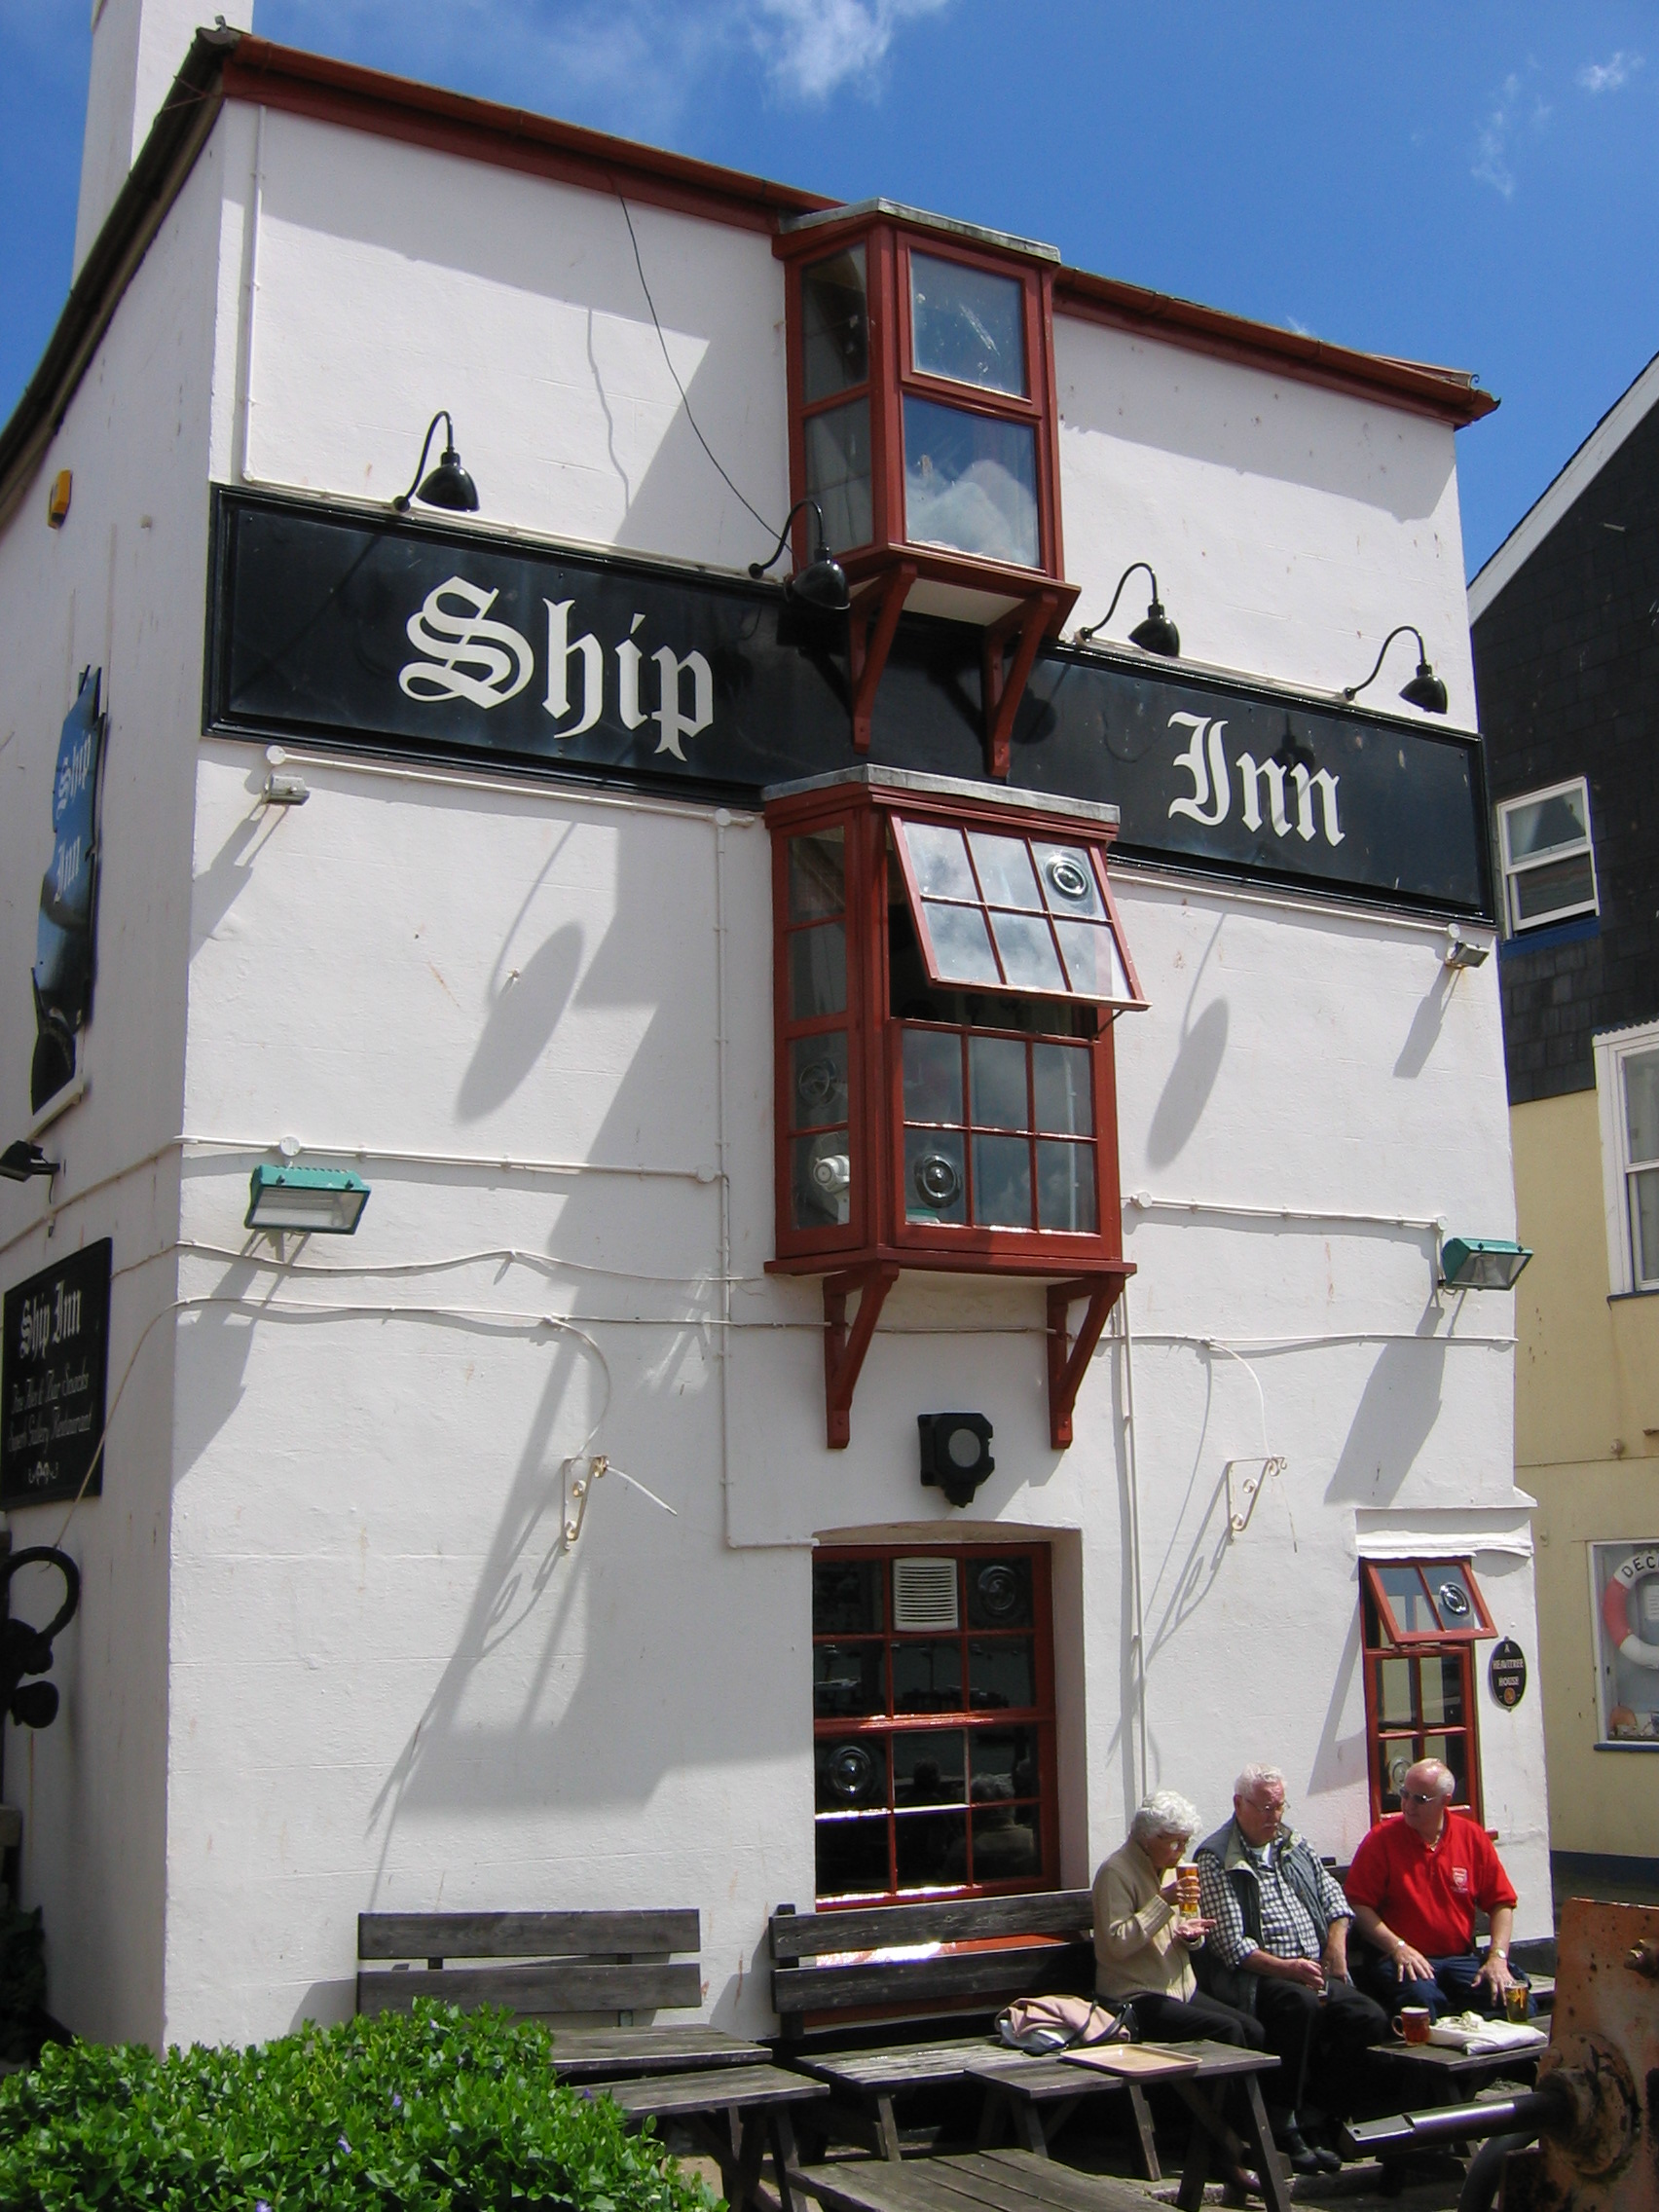 The Ship Inn Music Festival